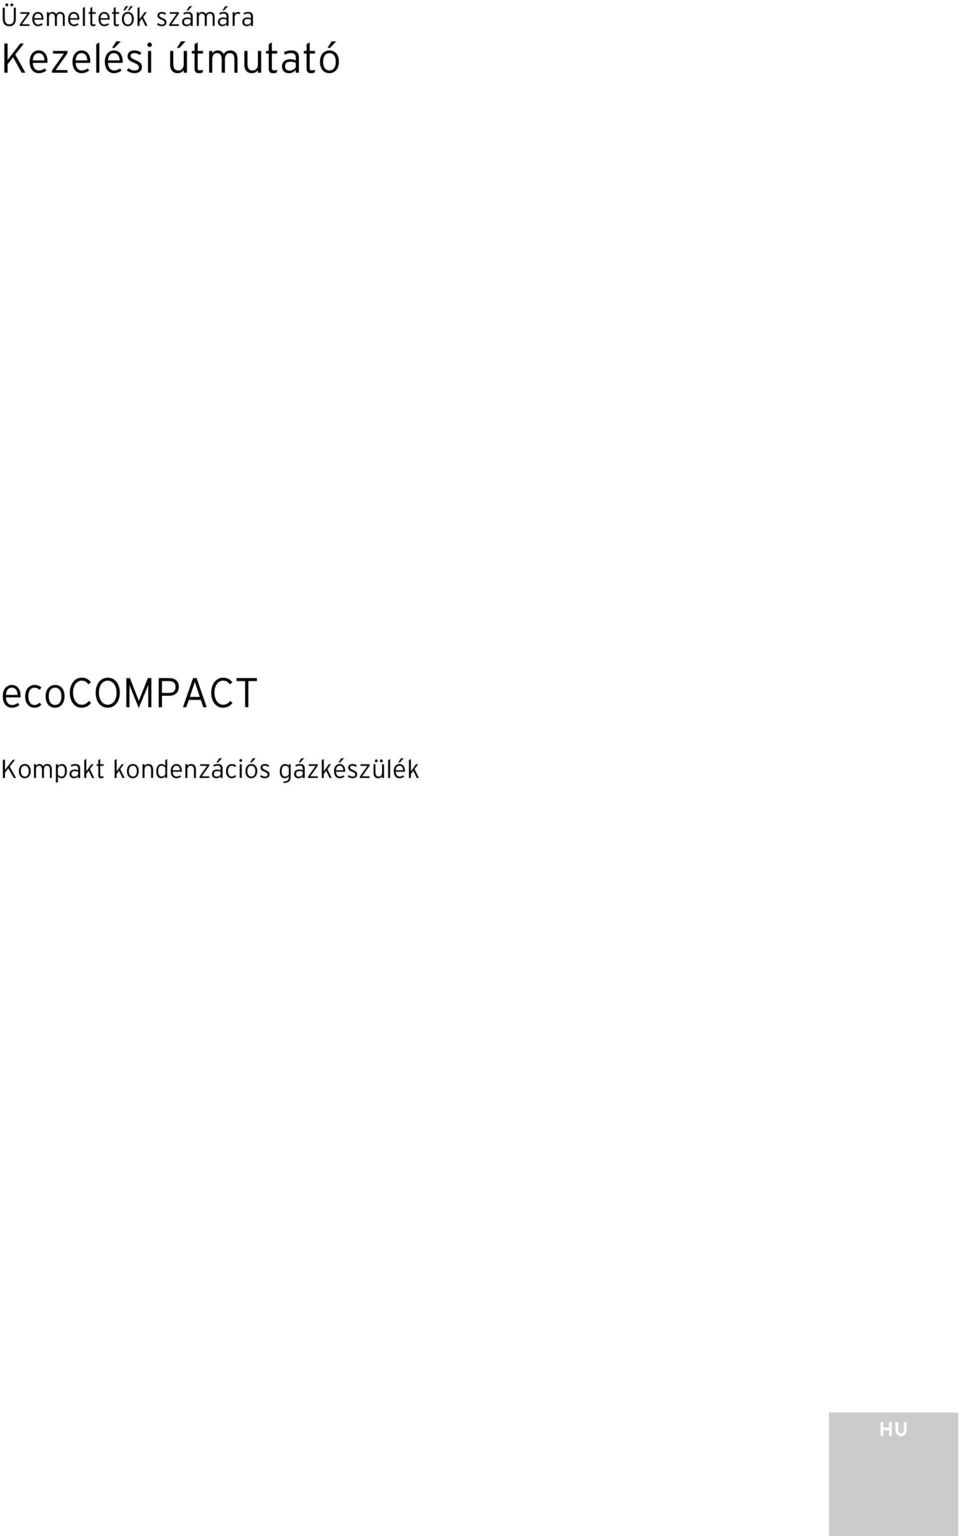 ecocompact Kompakt